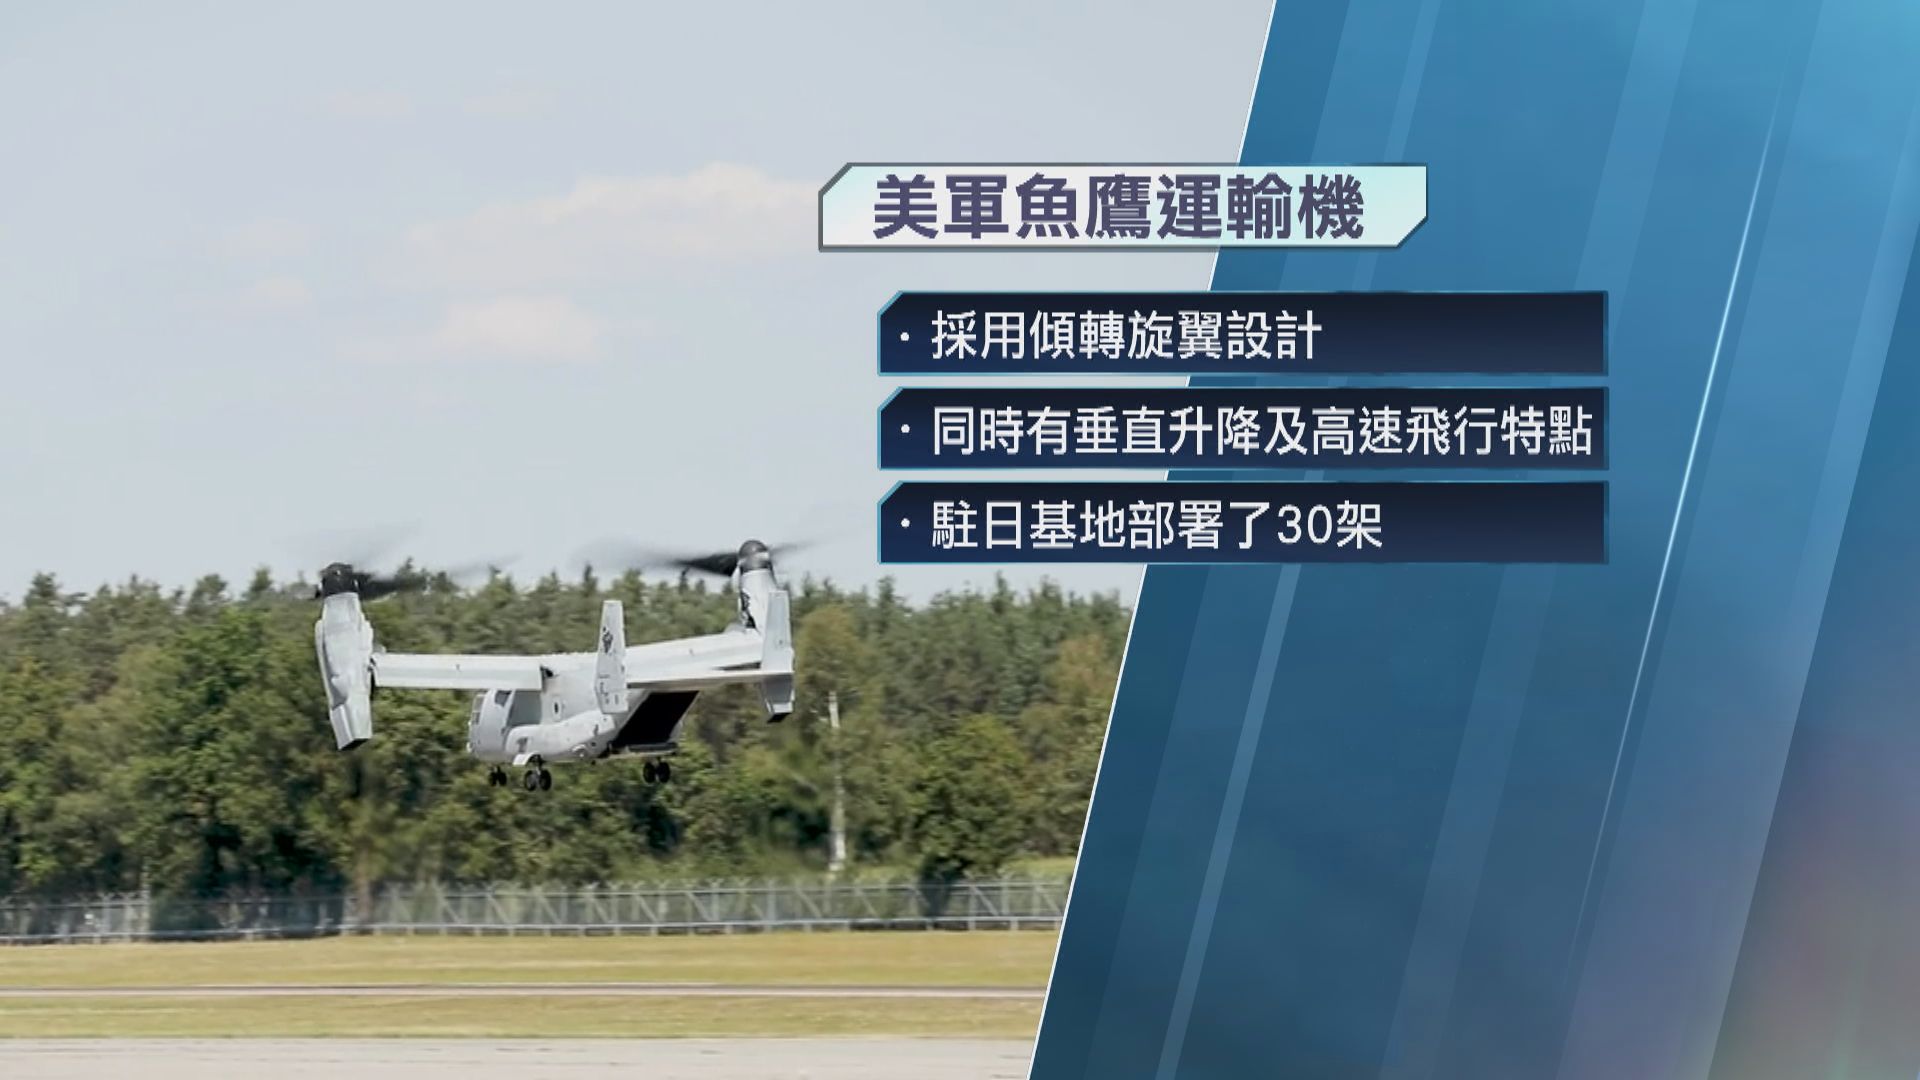 美軍暫時停飛全球魚鷹運輸機 指上周墜機事故涉物料故障